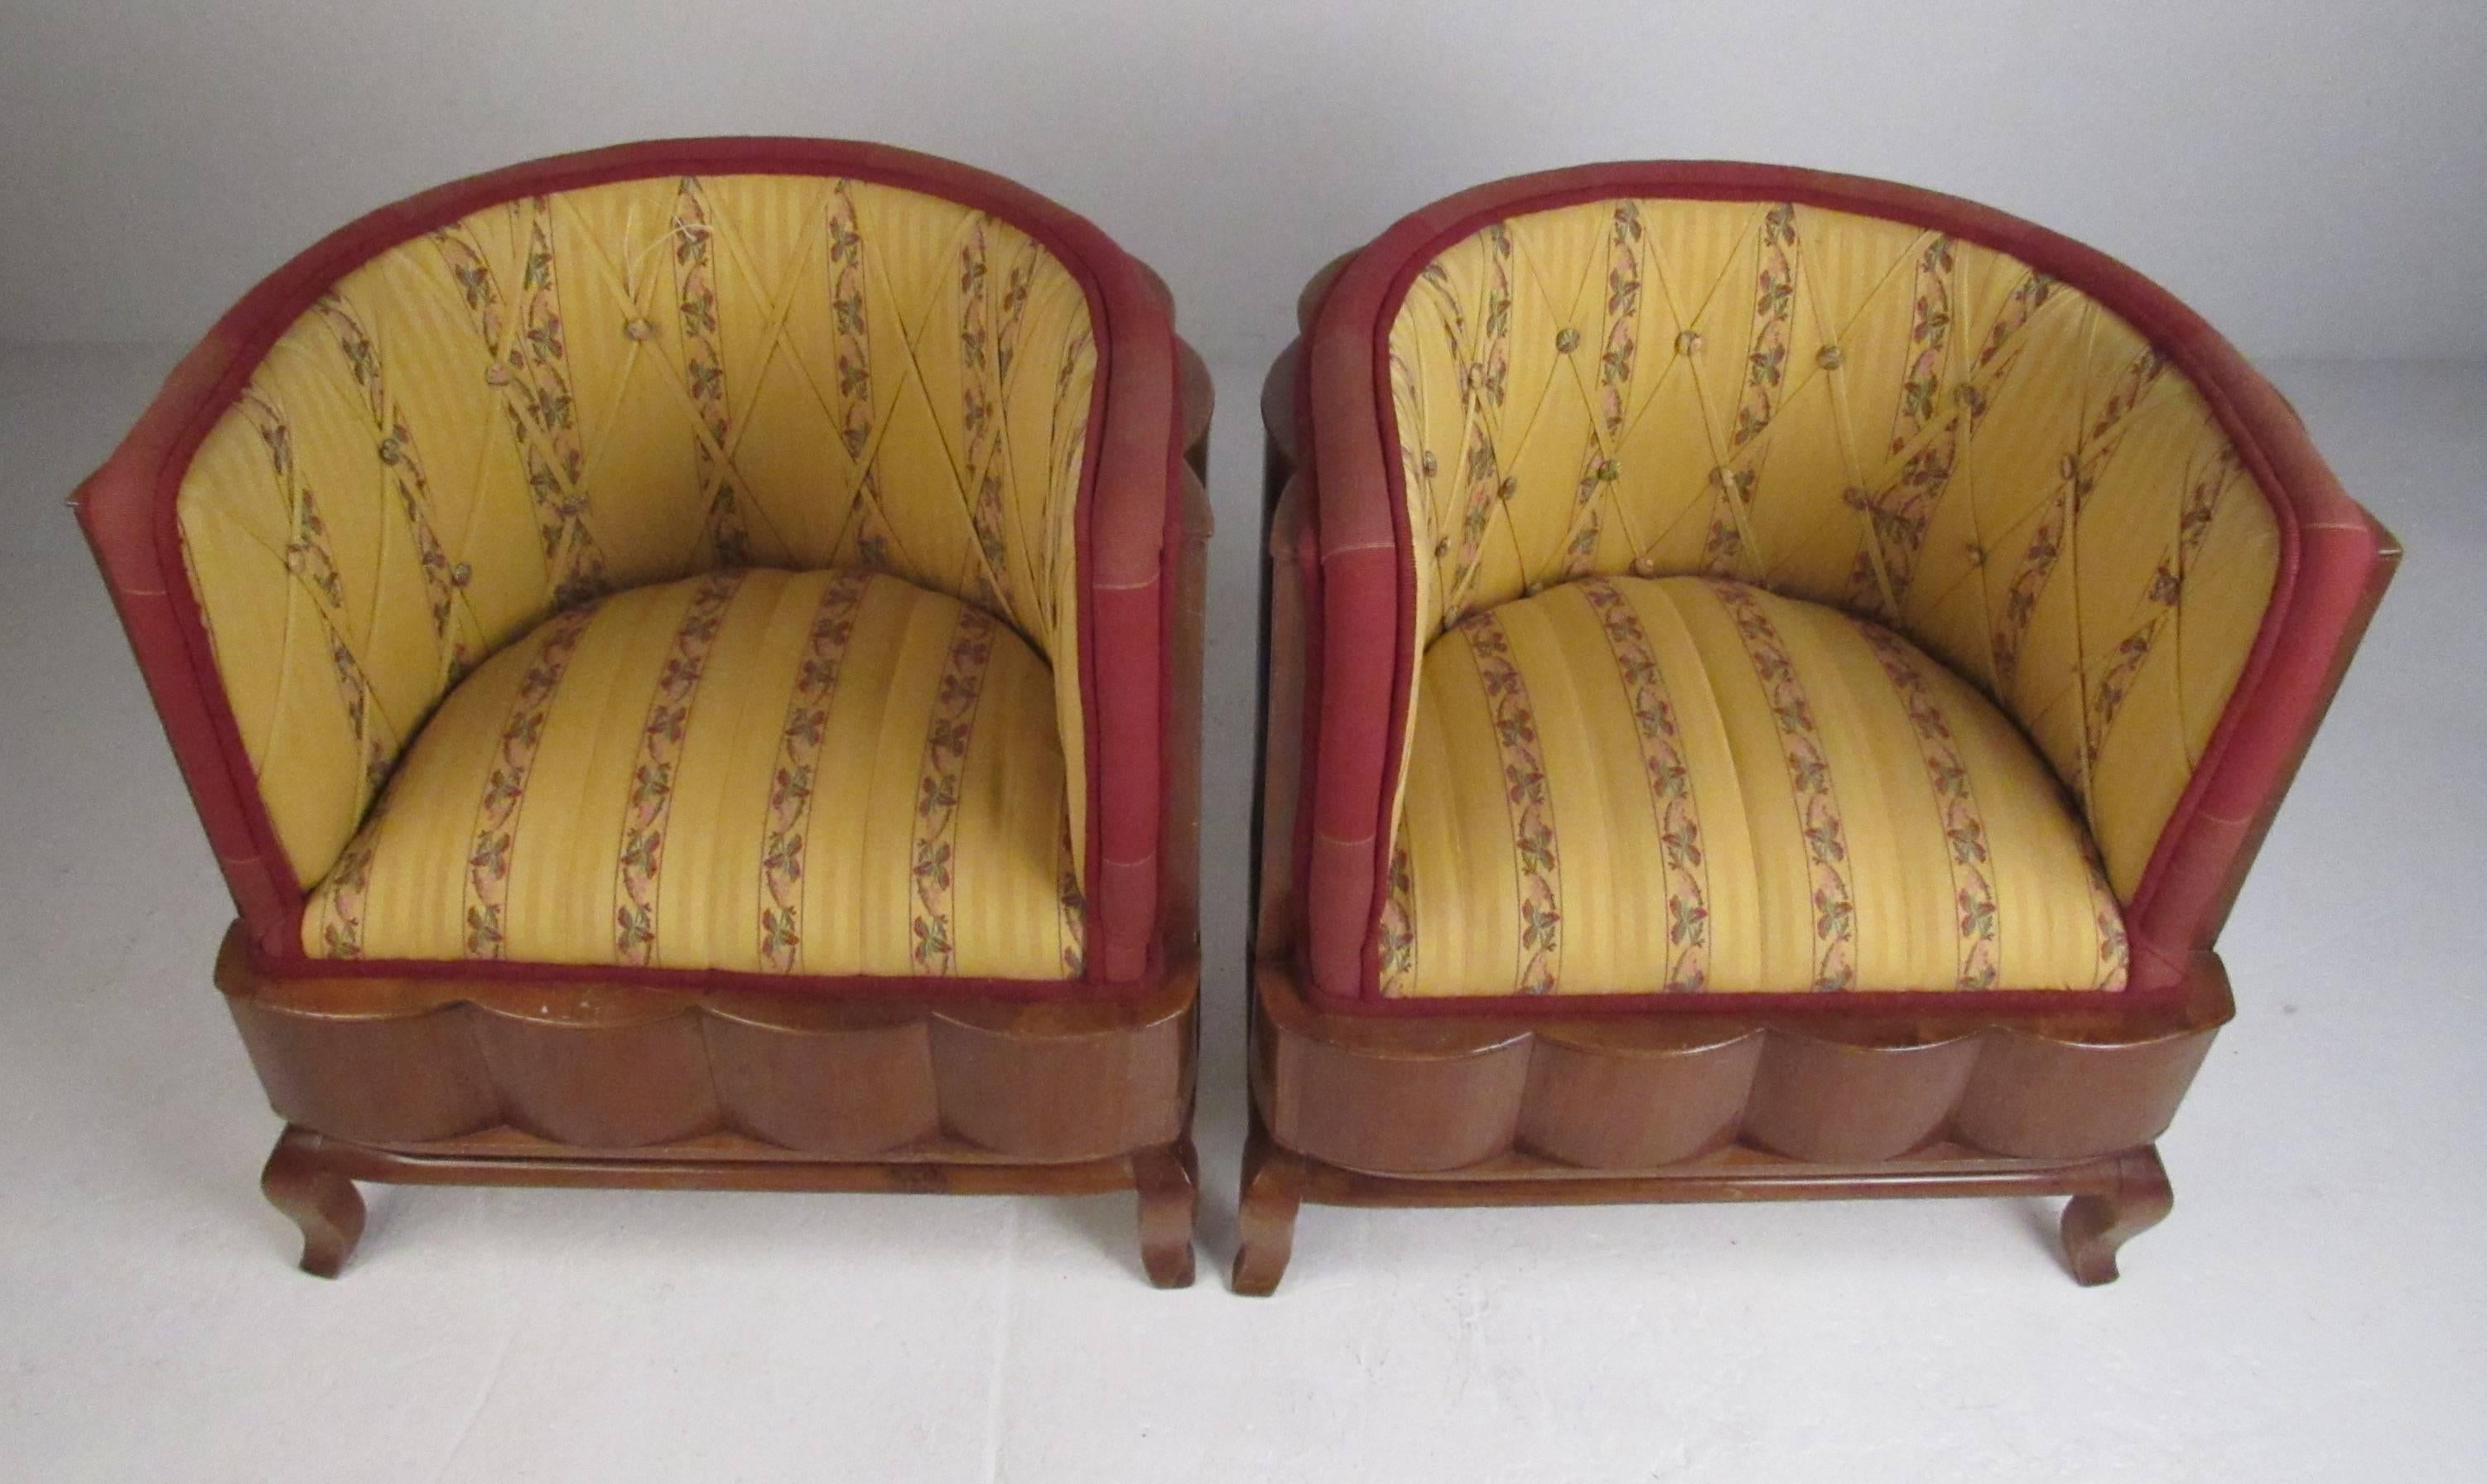 Ces chaises italiennes vintage de style Art Déco ont un effet spectaculaire avec leur dossier en bois dur cannelé et leur rembourrage coloré. Canapé assorti disponible. Veuillez confirmer la localisation de l'article (NY ou NJ) auprès du